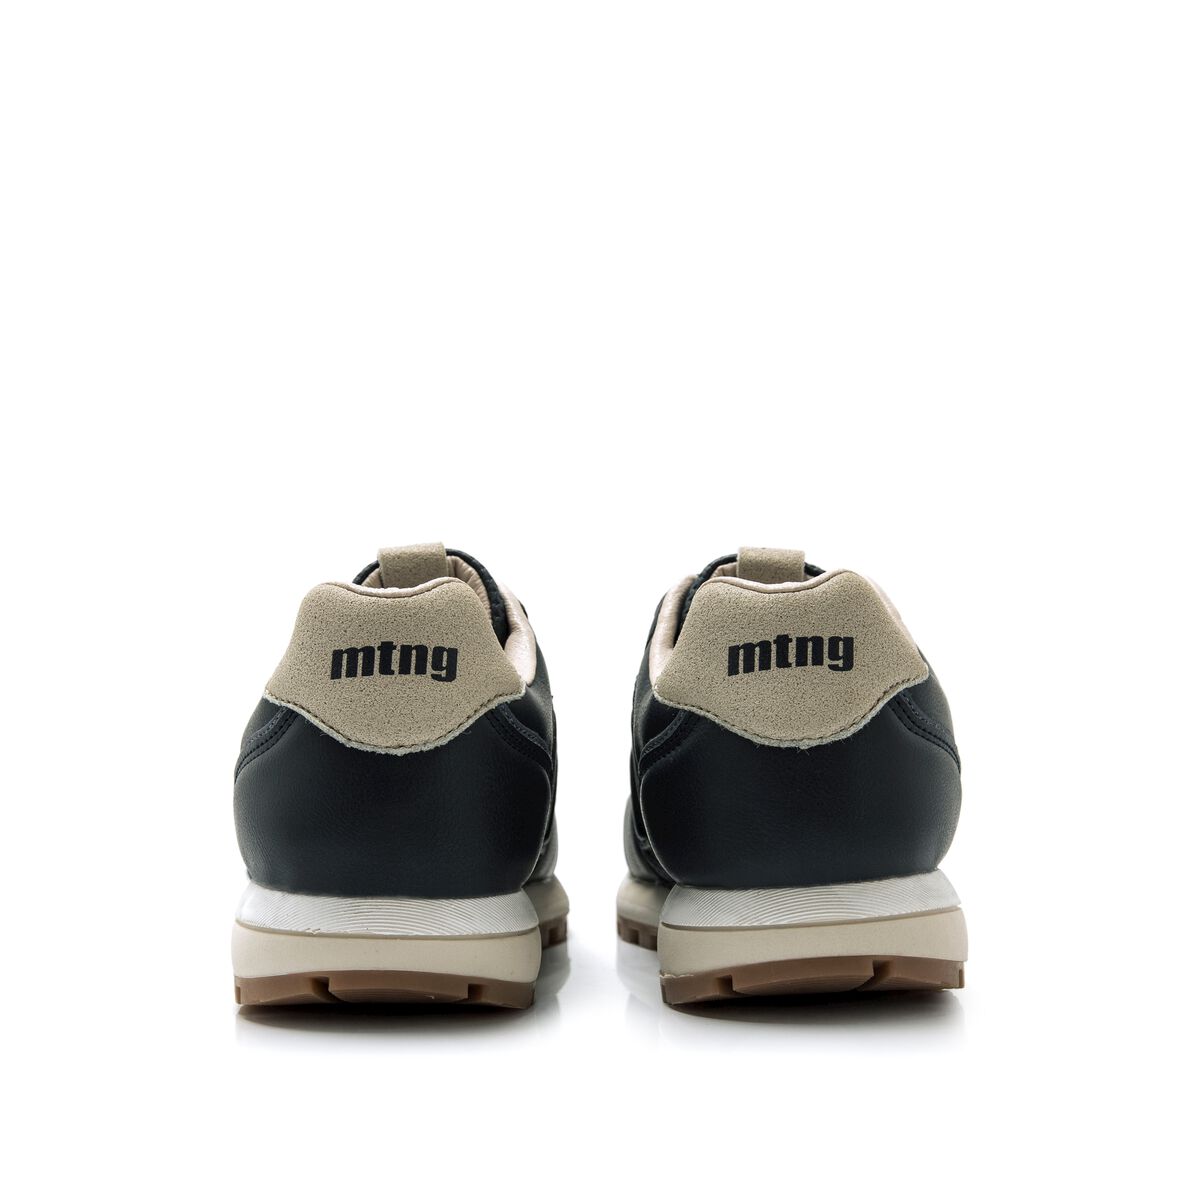 Zapatillas de Nino modelo PORLAND de MTNG image number 3